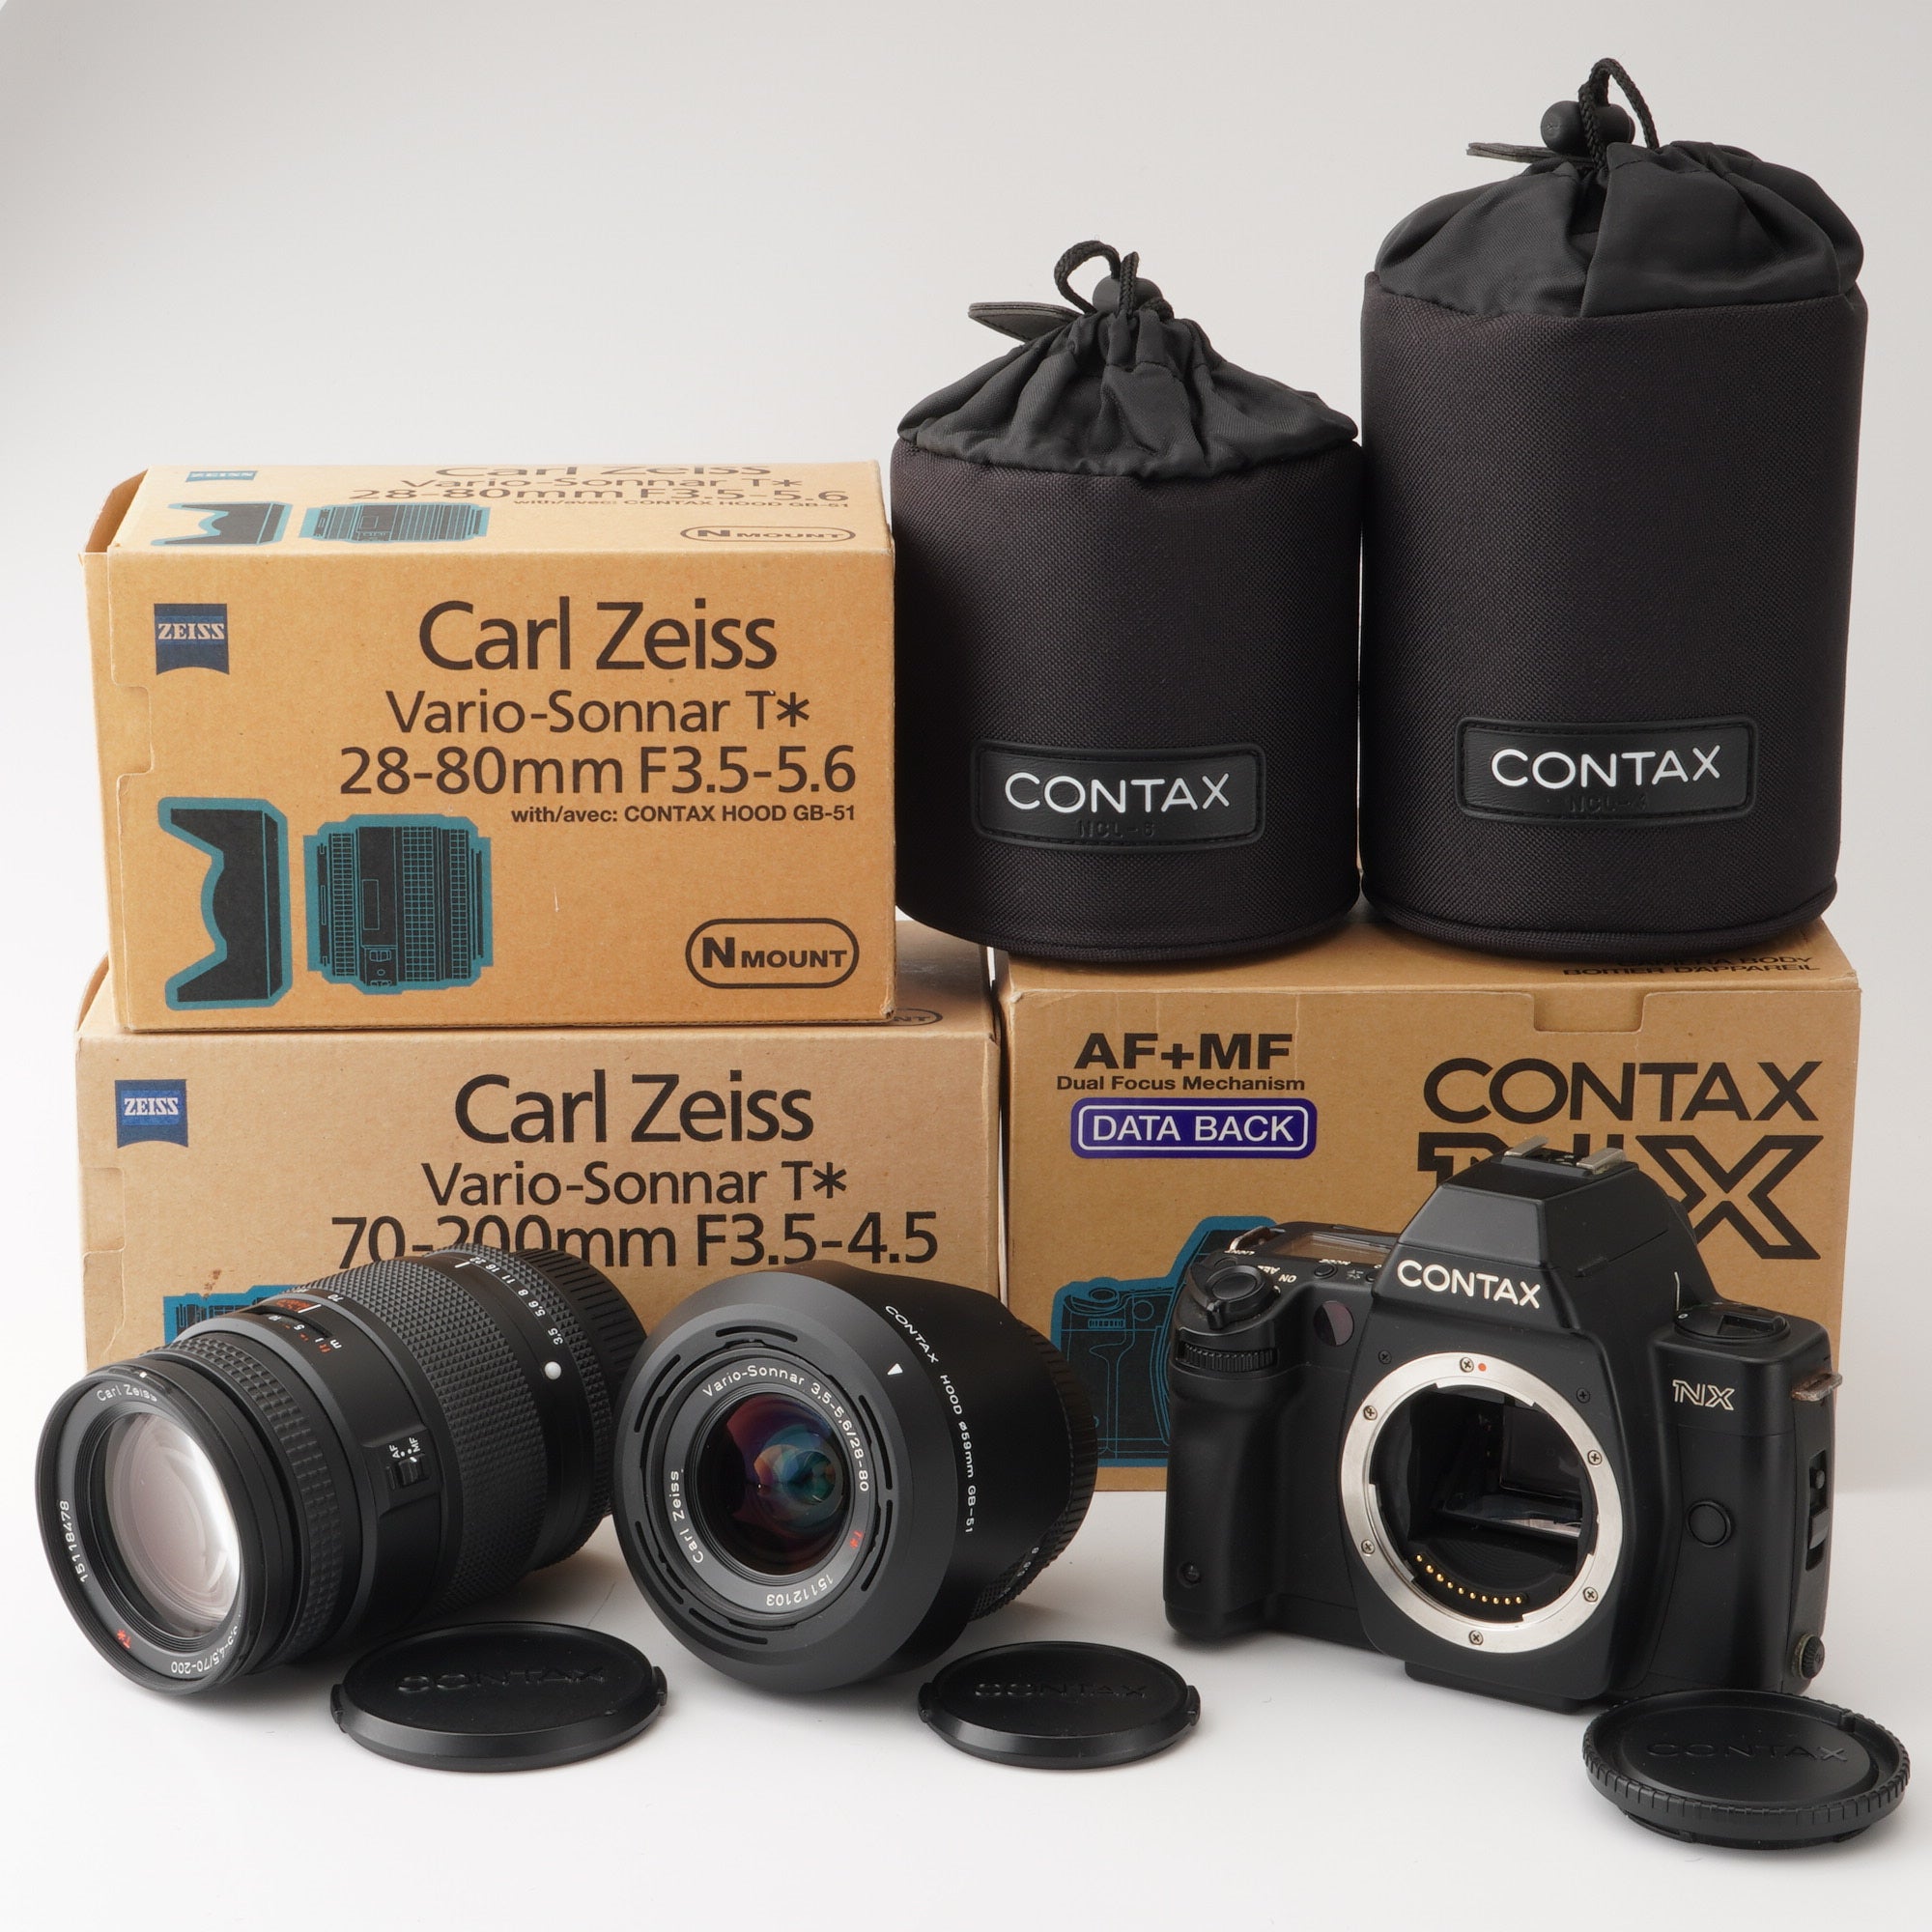 コンタックス Contax NX / Carl Zeiss 28-80mm F3.5-5.6 T* / 70-200mm F3.5-4.5 T*